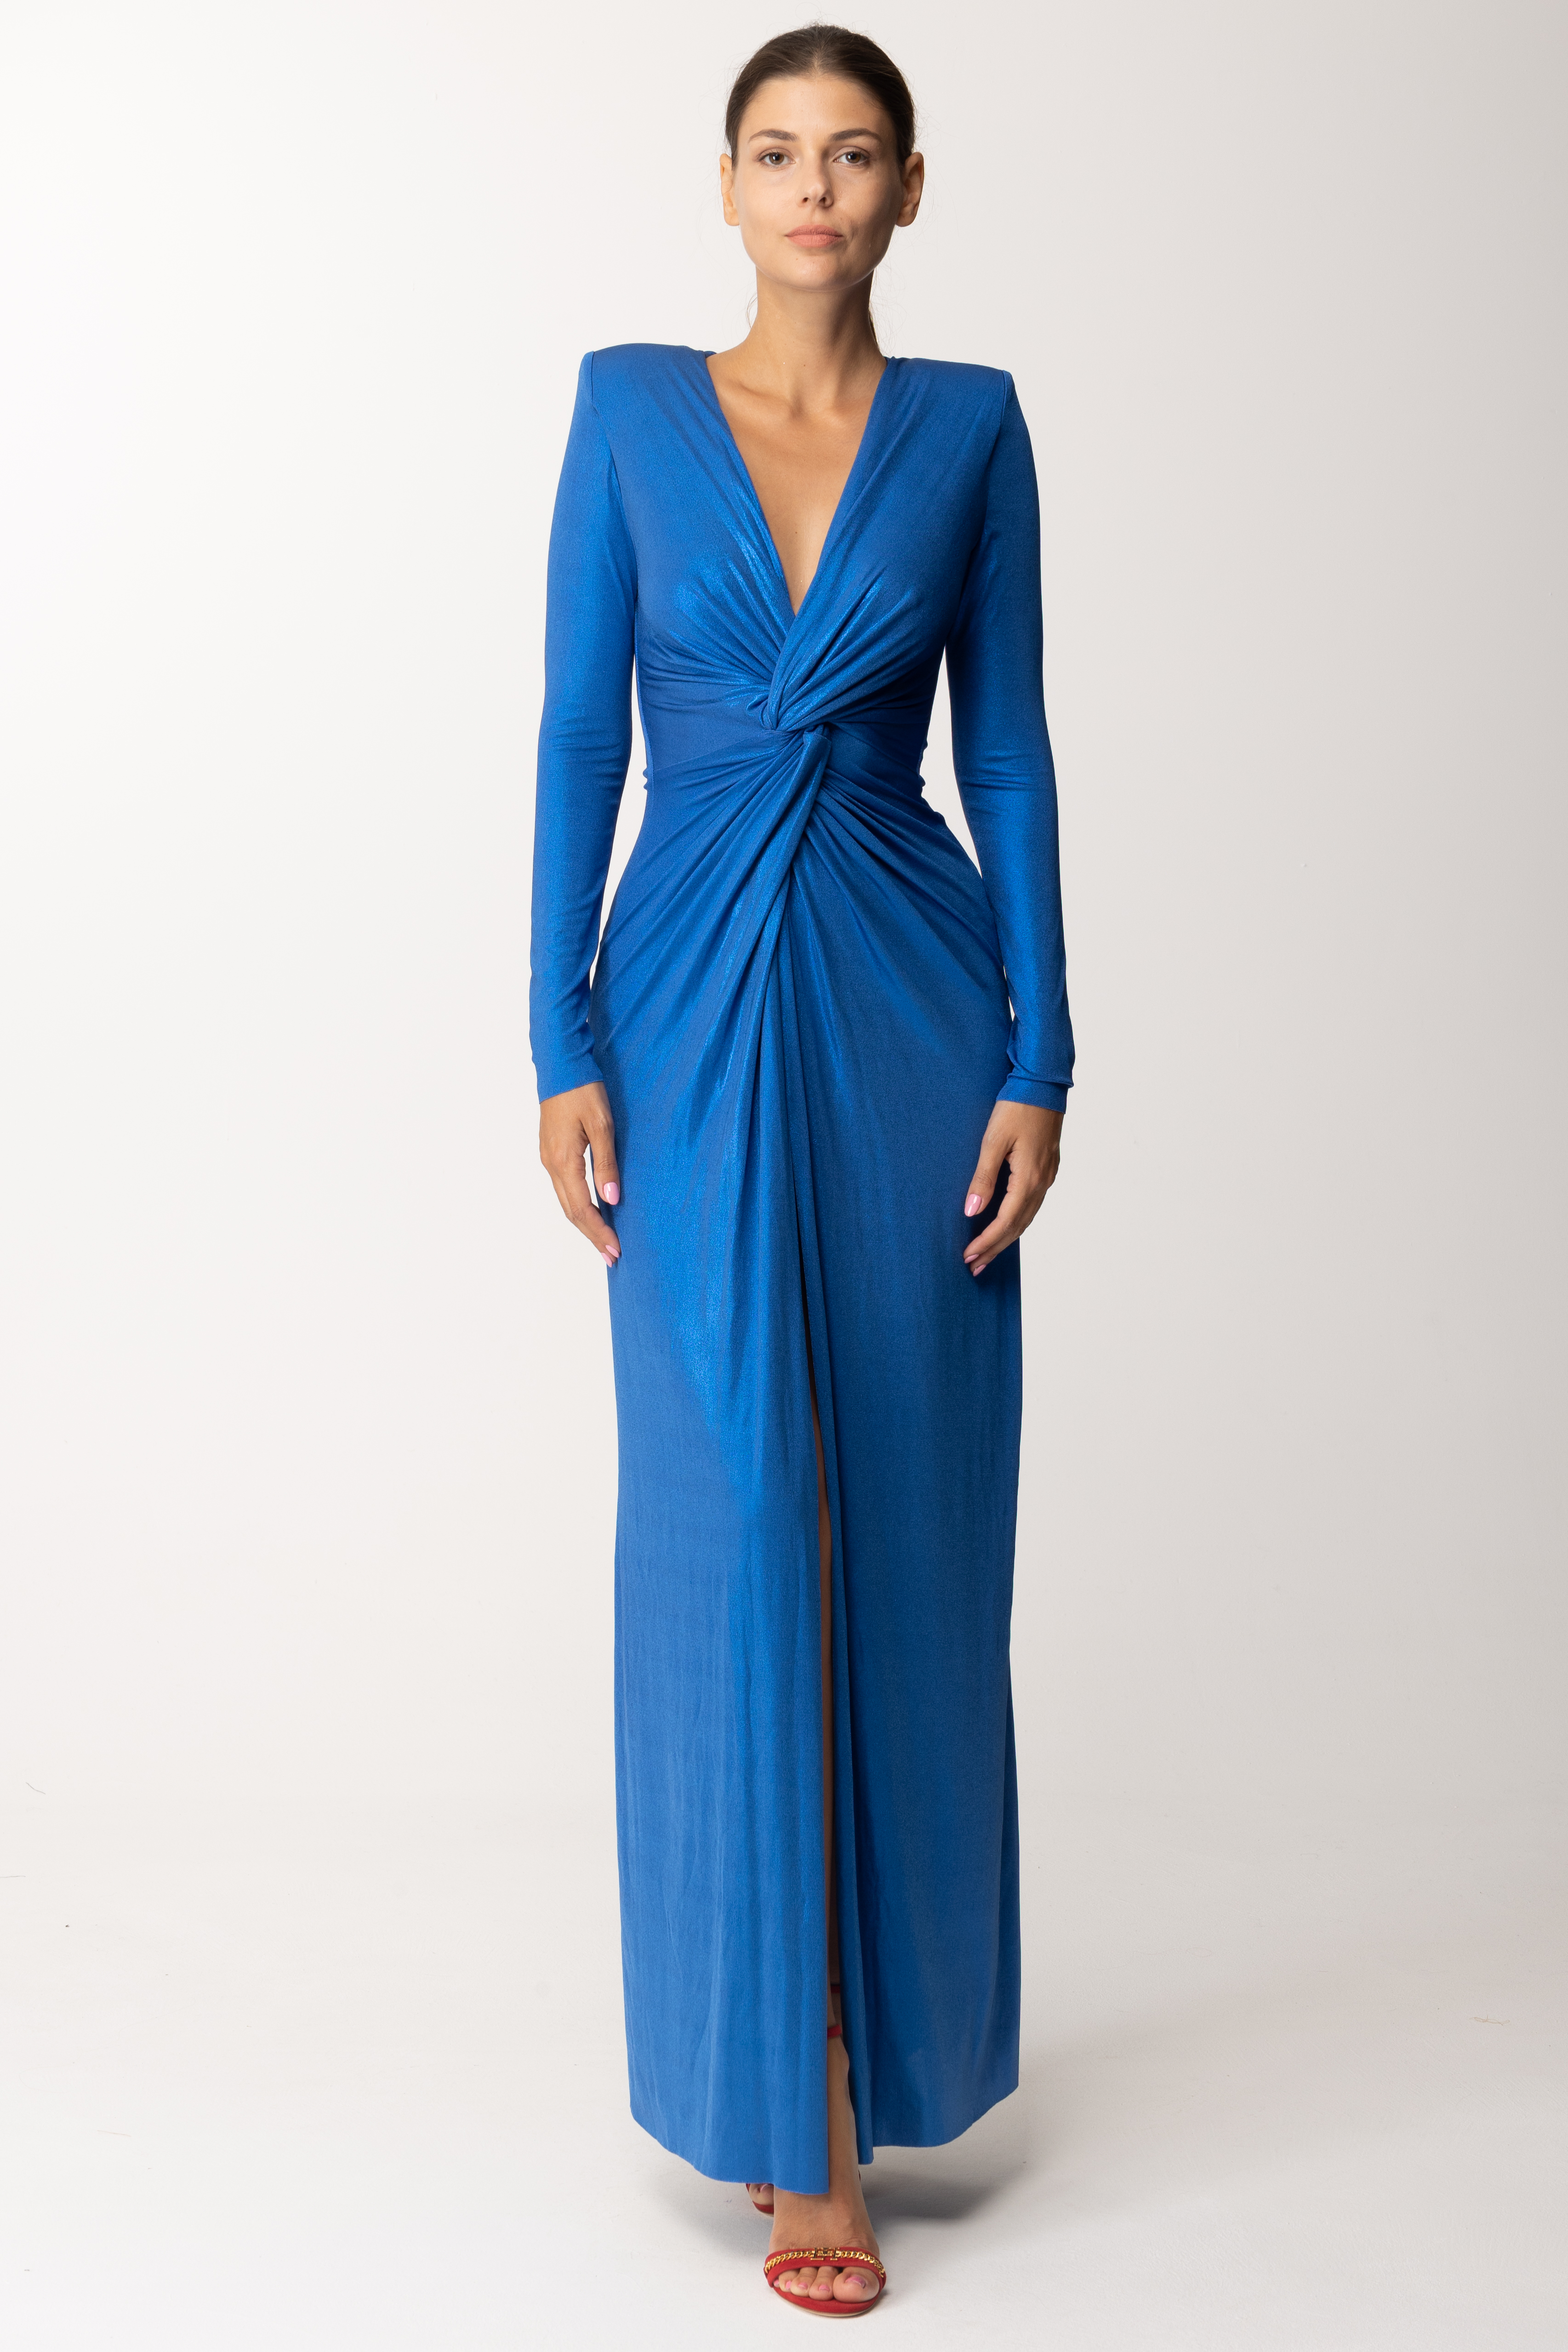 Podgląd: Dramèe Laminowana sukienka z węzłem Blu